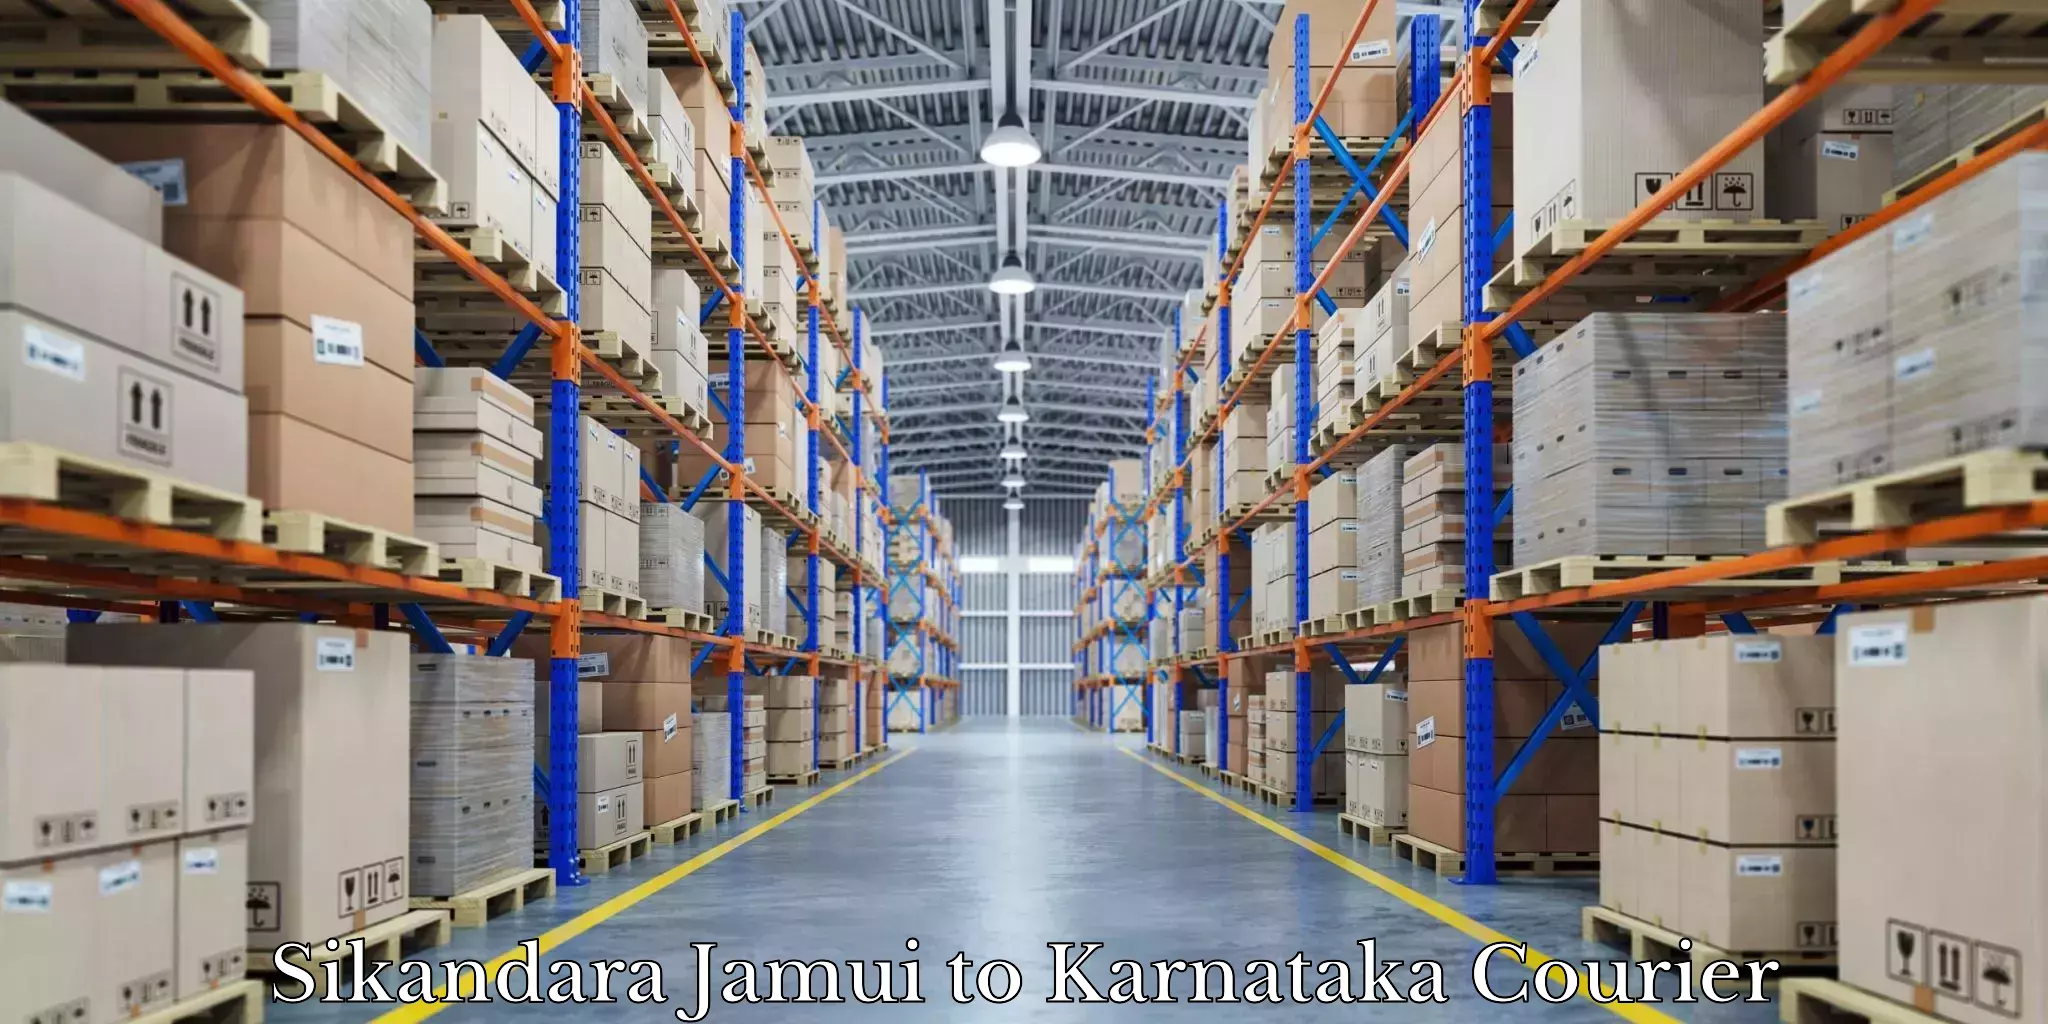 Furniture moving and handling in Sikandara Jamui to Kanjarakatte